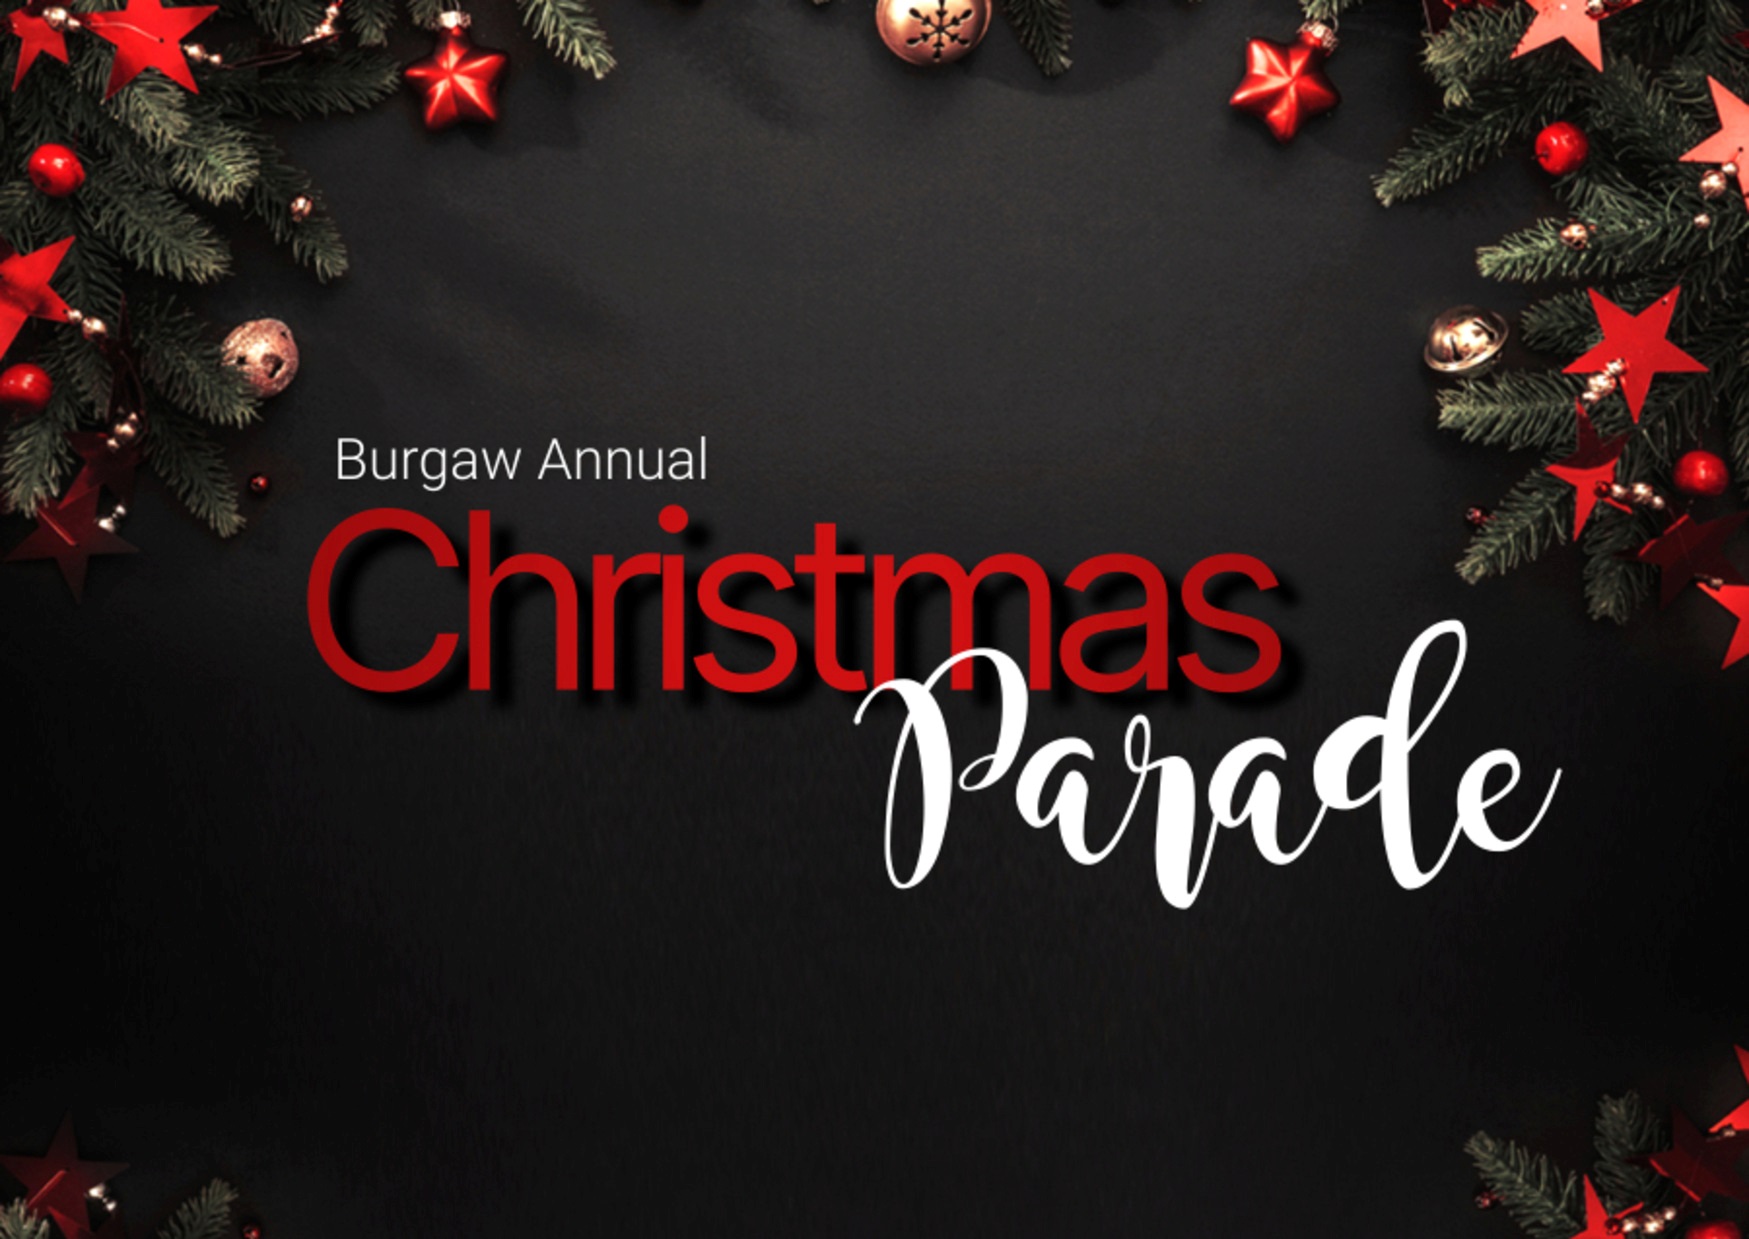 Burgaw Annual Christmas Parade